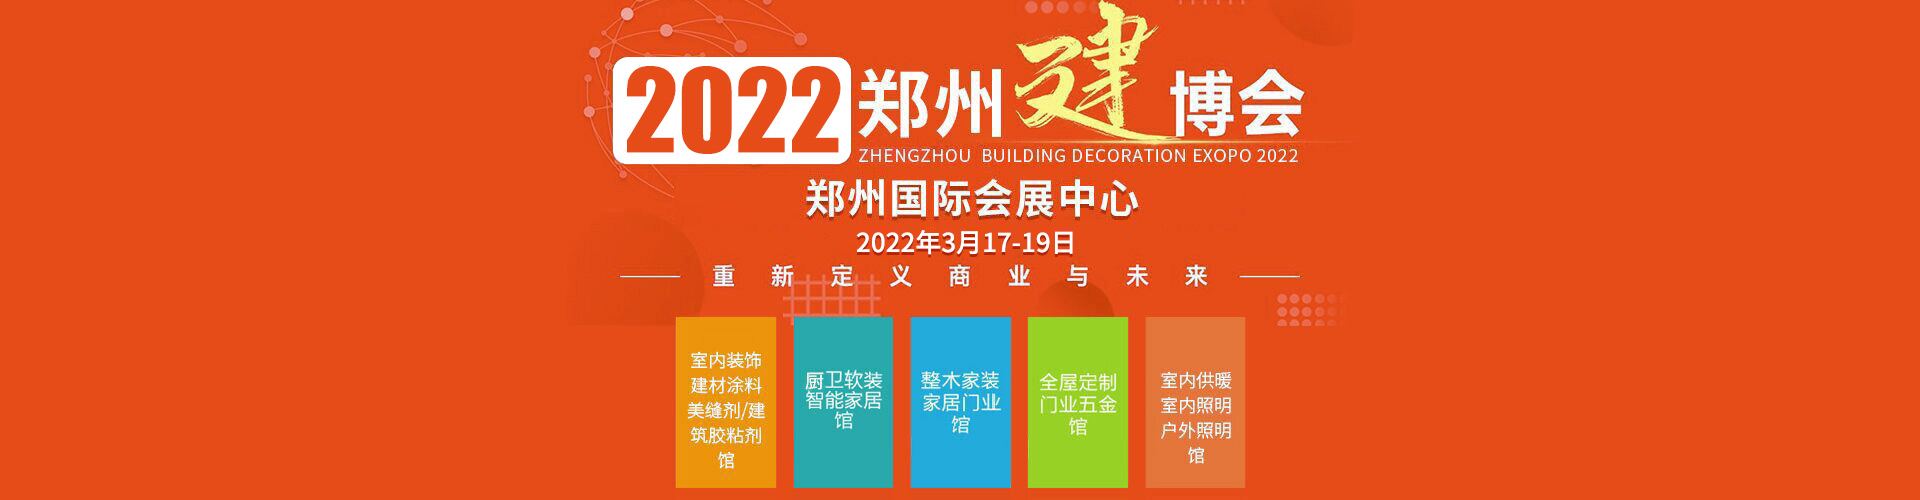 2022郑州厨卫展—报名地址